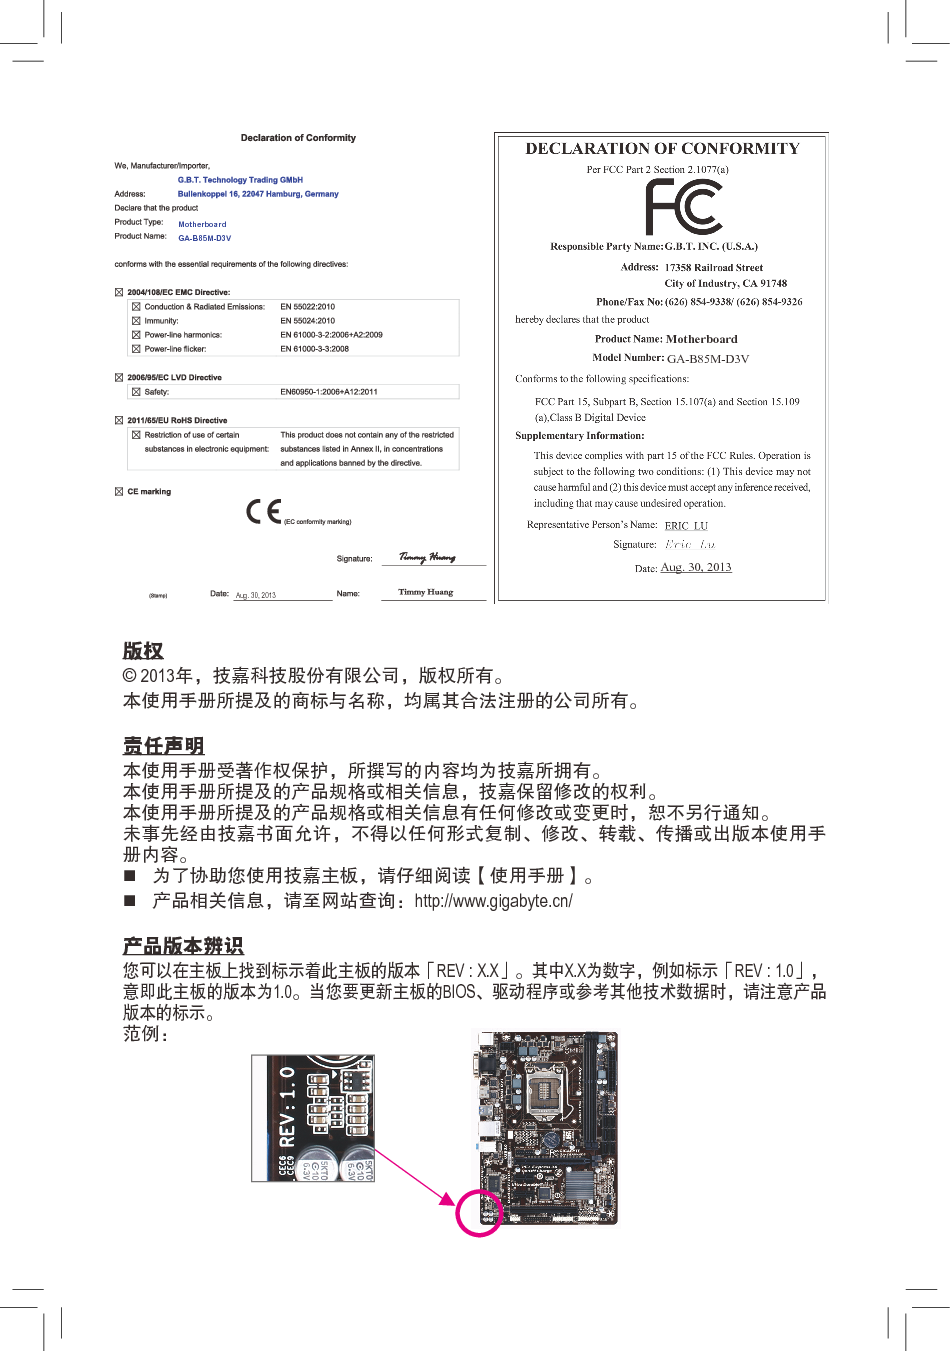 技嘉 Gigabyte GA-B85M-D3V 1101版 使用手册 第1页